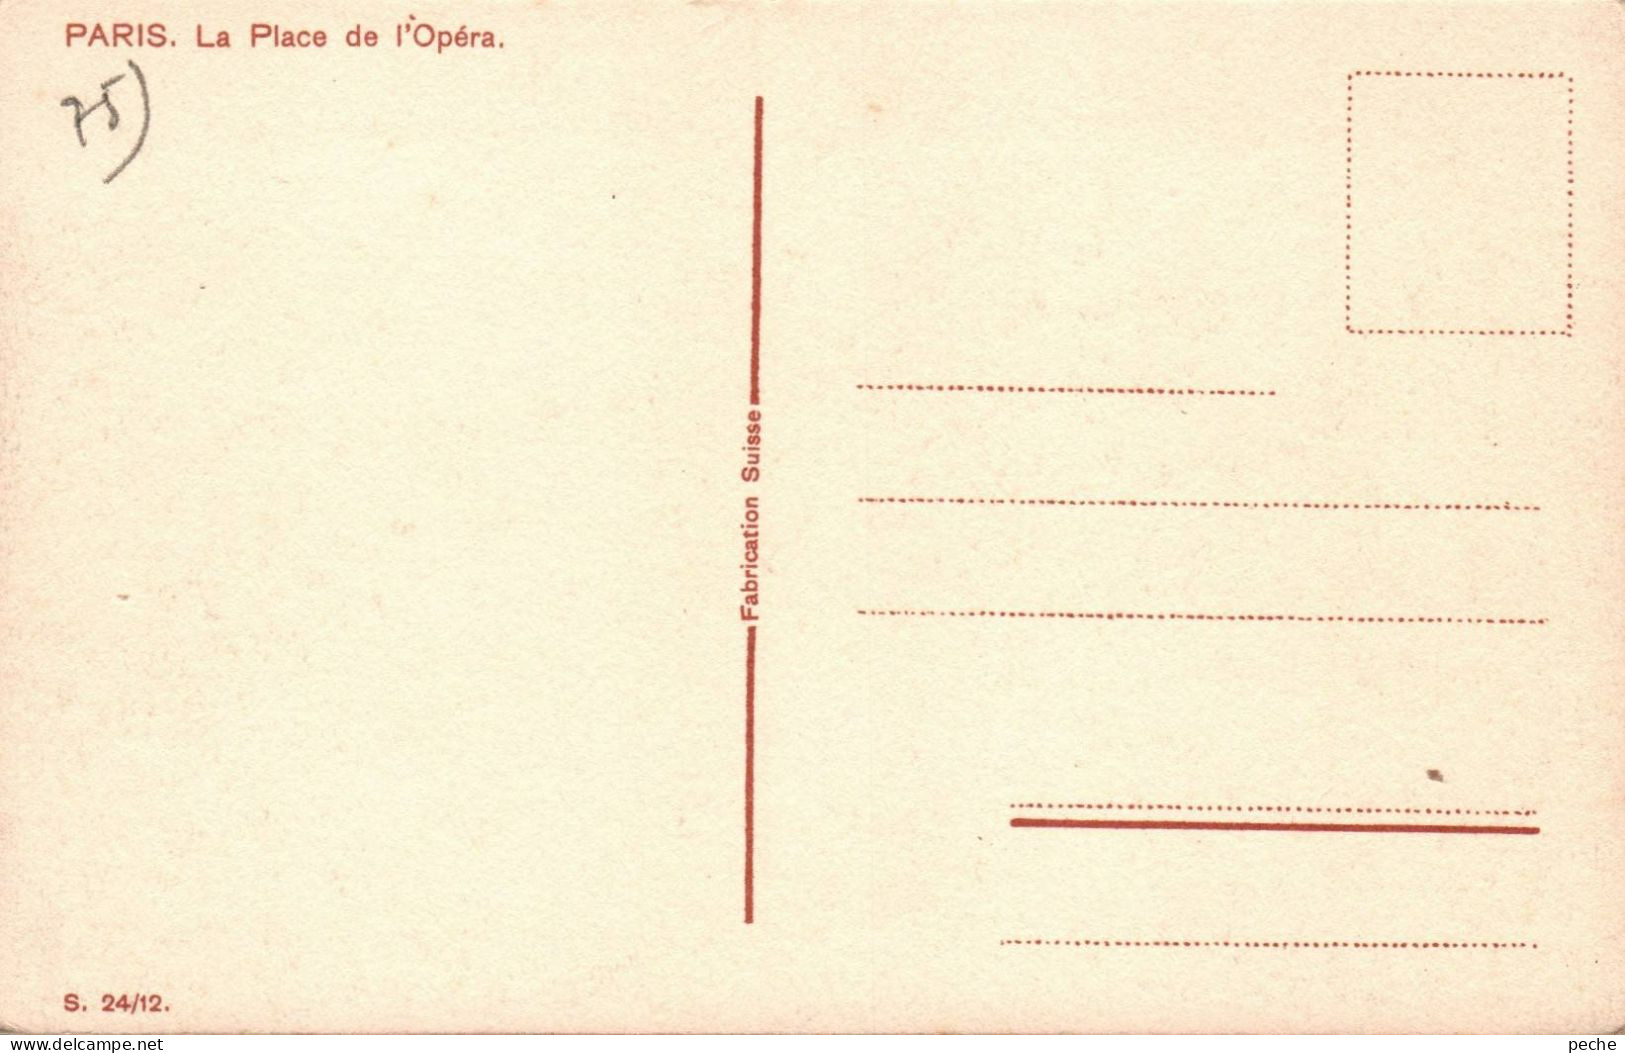 N° 2484 W -cpa Paris -illustrateur- Opéra- - Autres Monuments, édifices